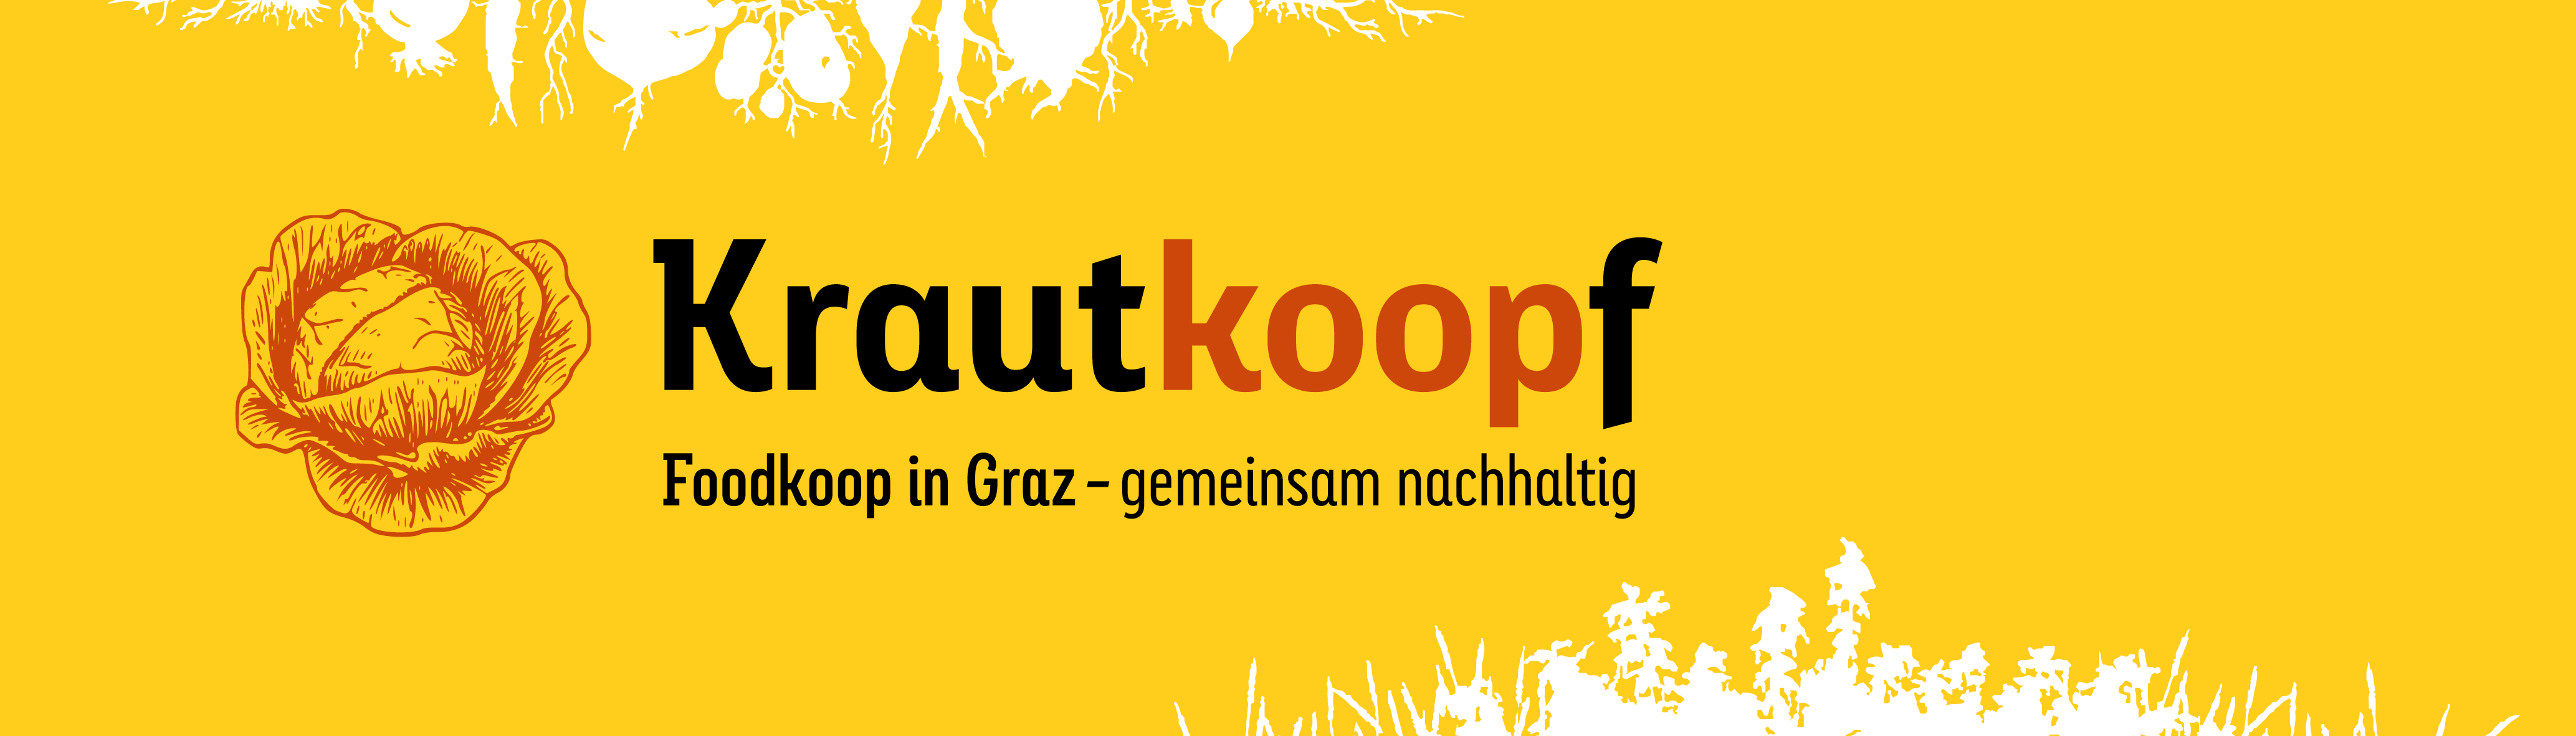 Krautkoopf Logo. Foodkoop in Graz - gemeinsam nachhaltig.